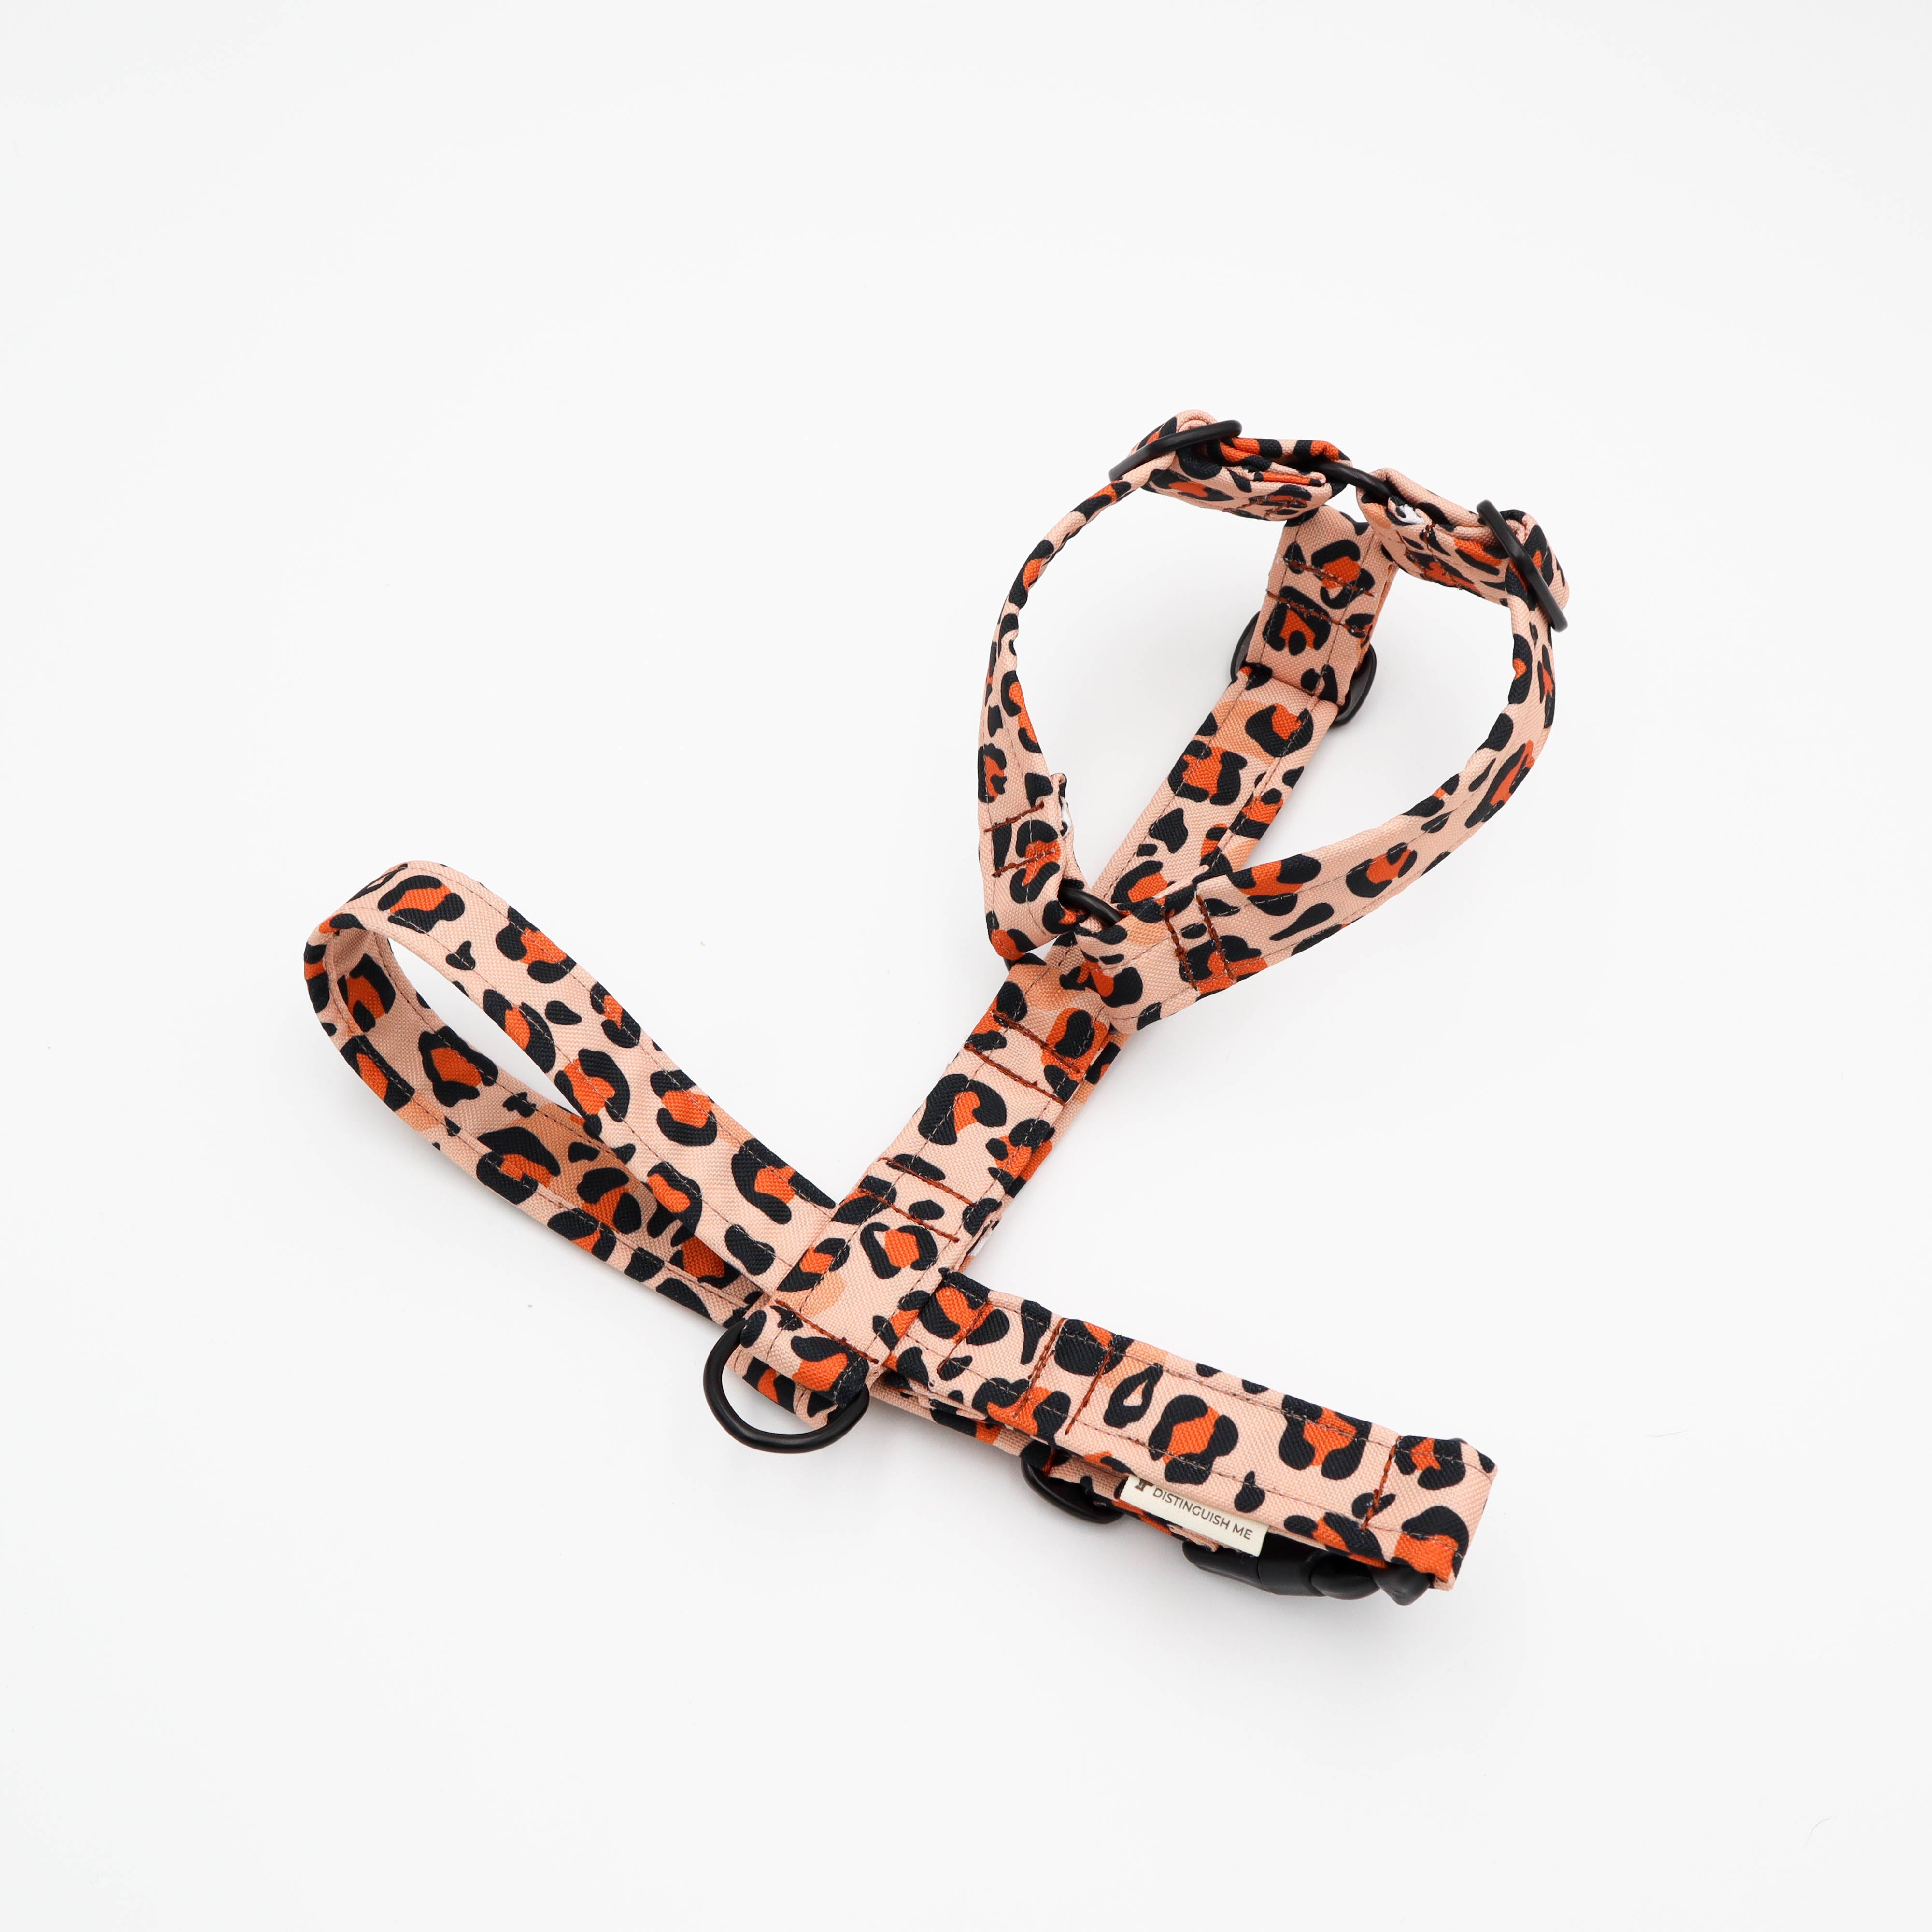 cheetah dog harness by distinguish me